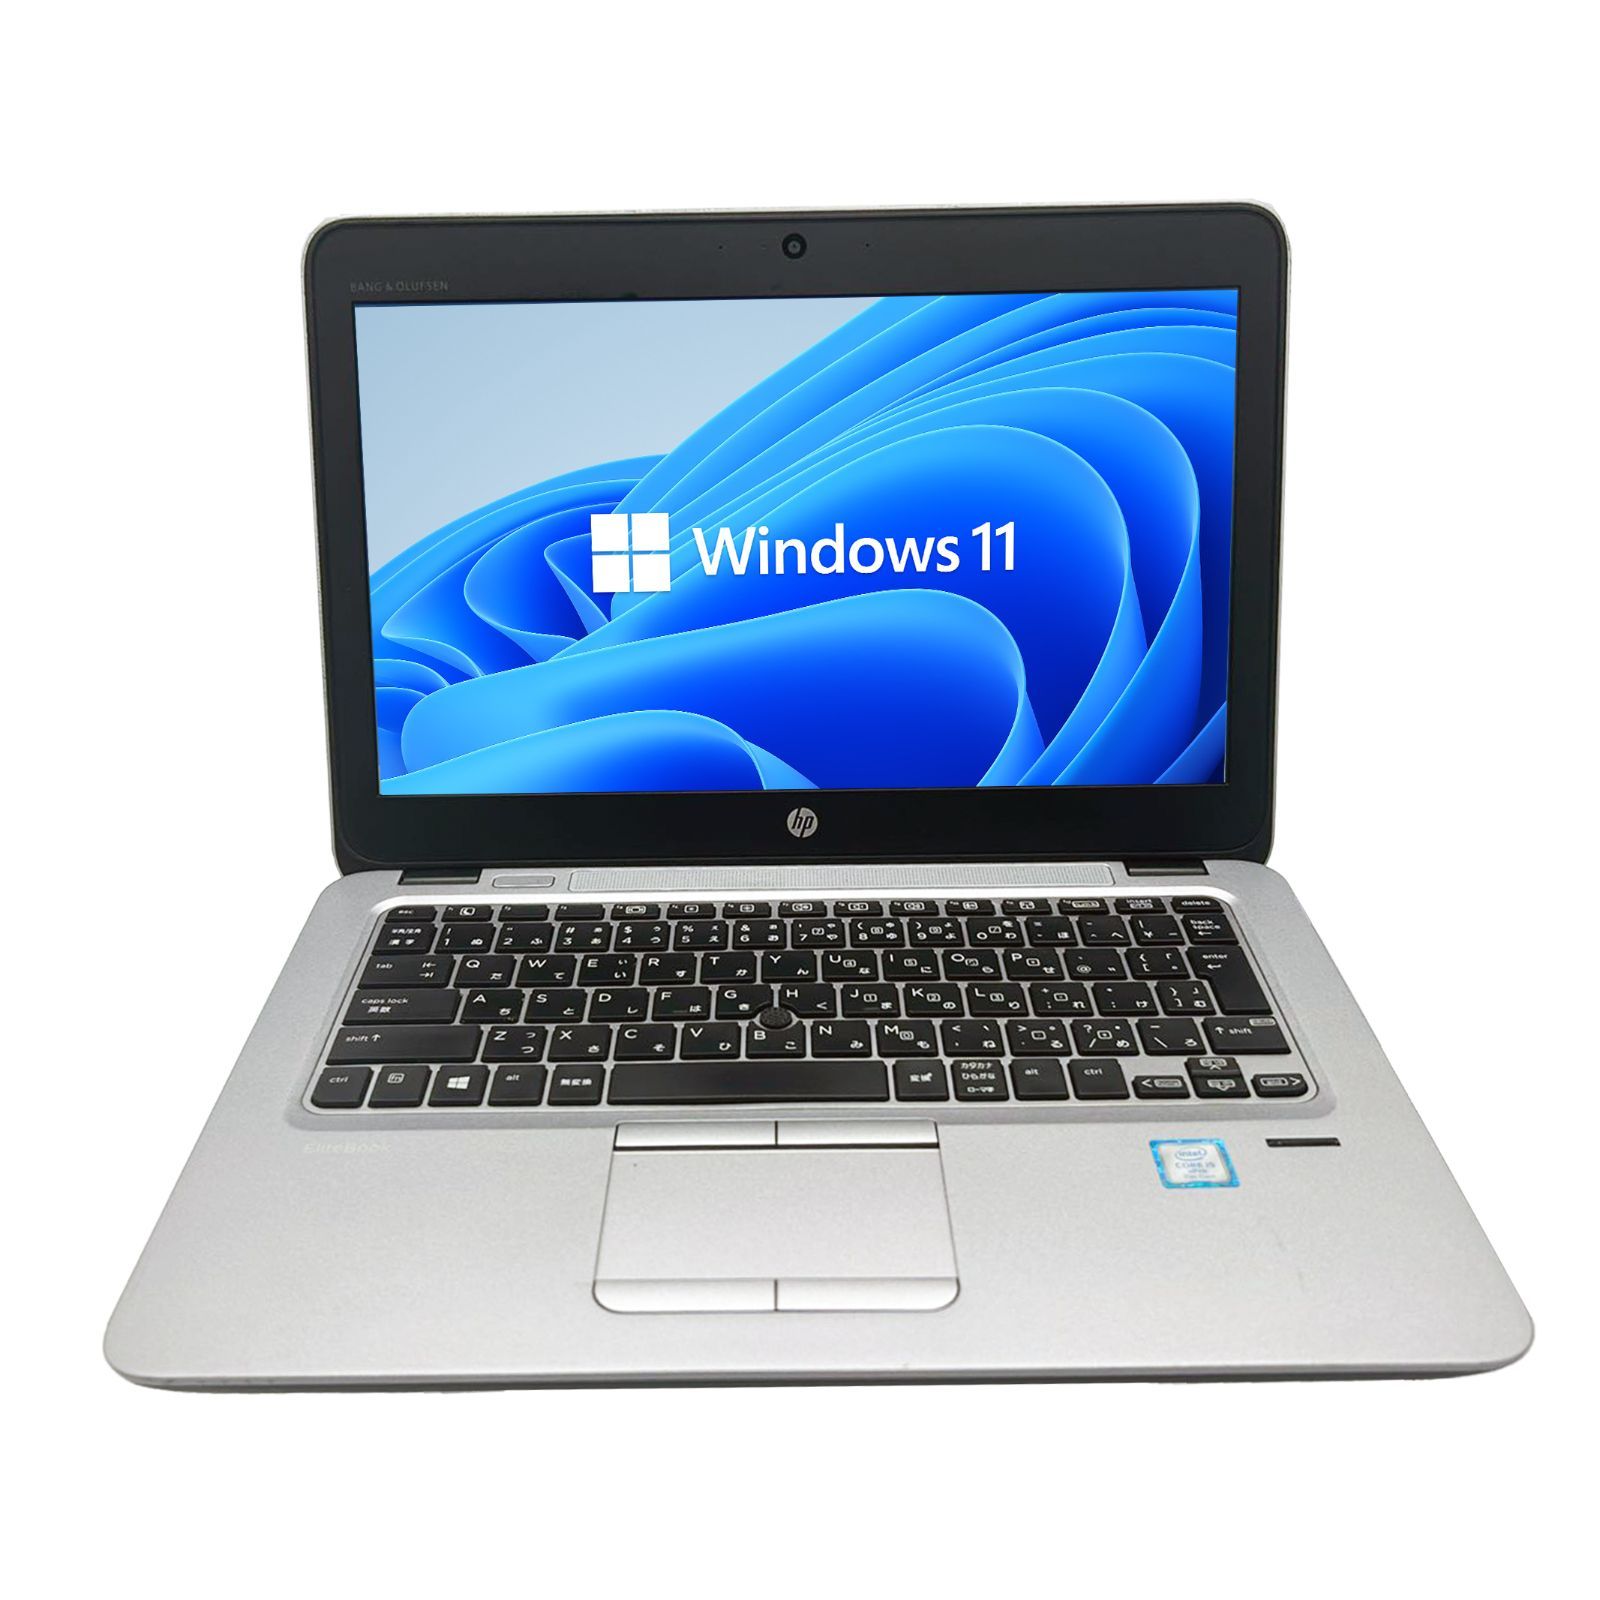 【 訳あり 大特価 早い者勝ち】 第七世代Corei5 HP EliteBook 820 G4 メモリー4GB SSD128GB 12.5型  Windows11 MS Office2021 カメラ 無線 BT バッテリー欠品 中古 ノートパソコン